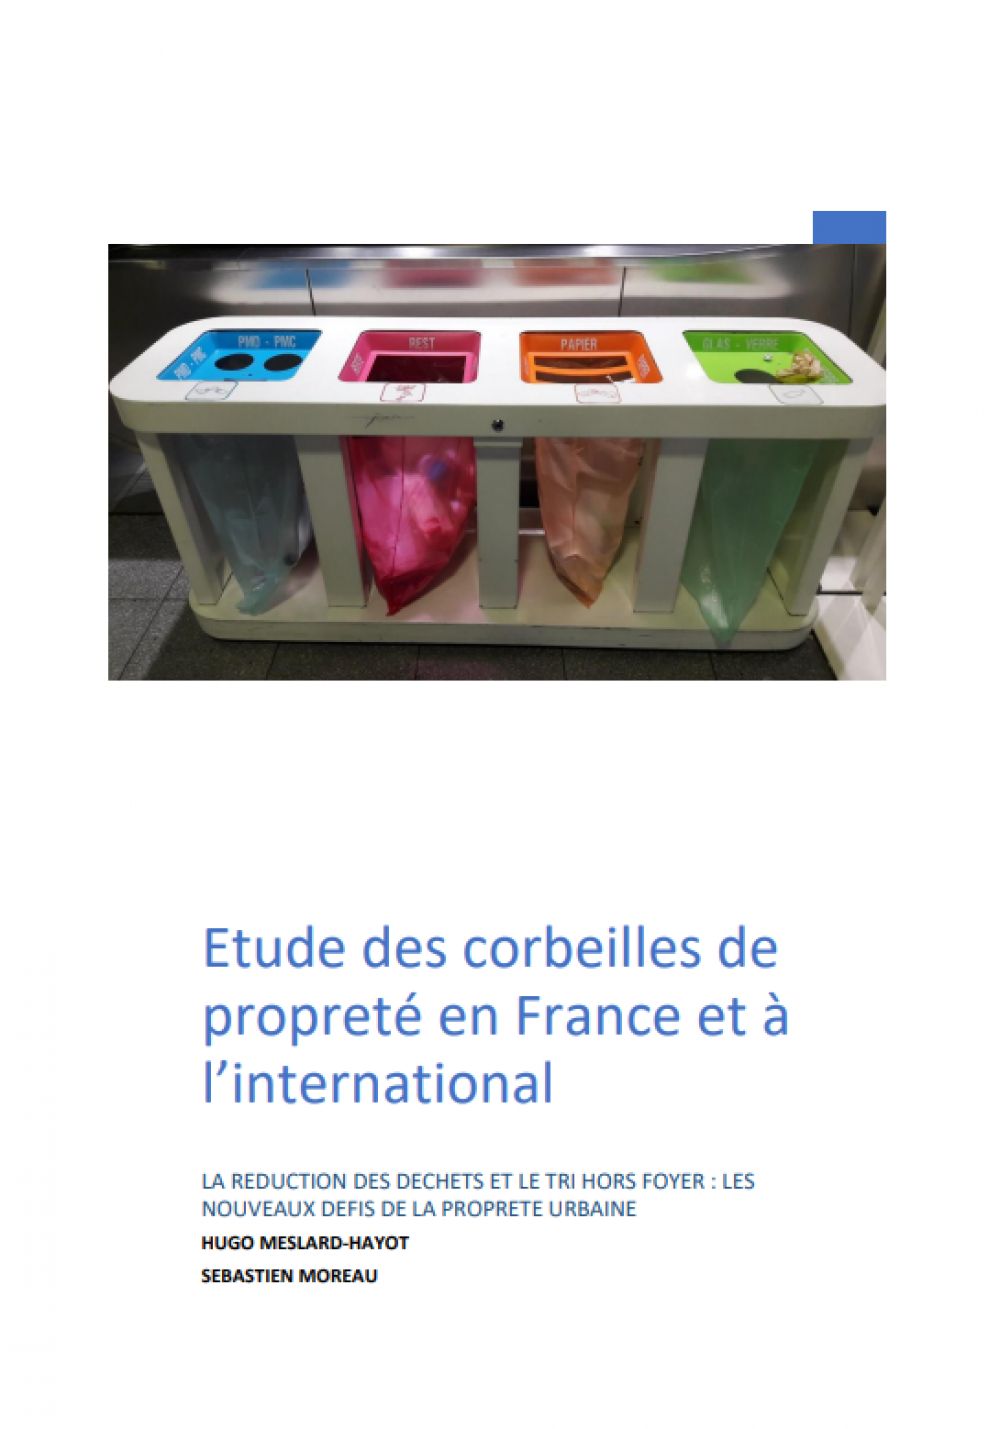 Etude des corbeilles de propreté en France et à l'international